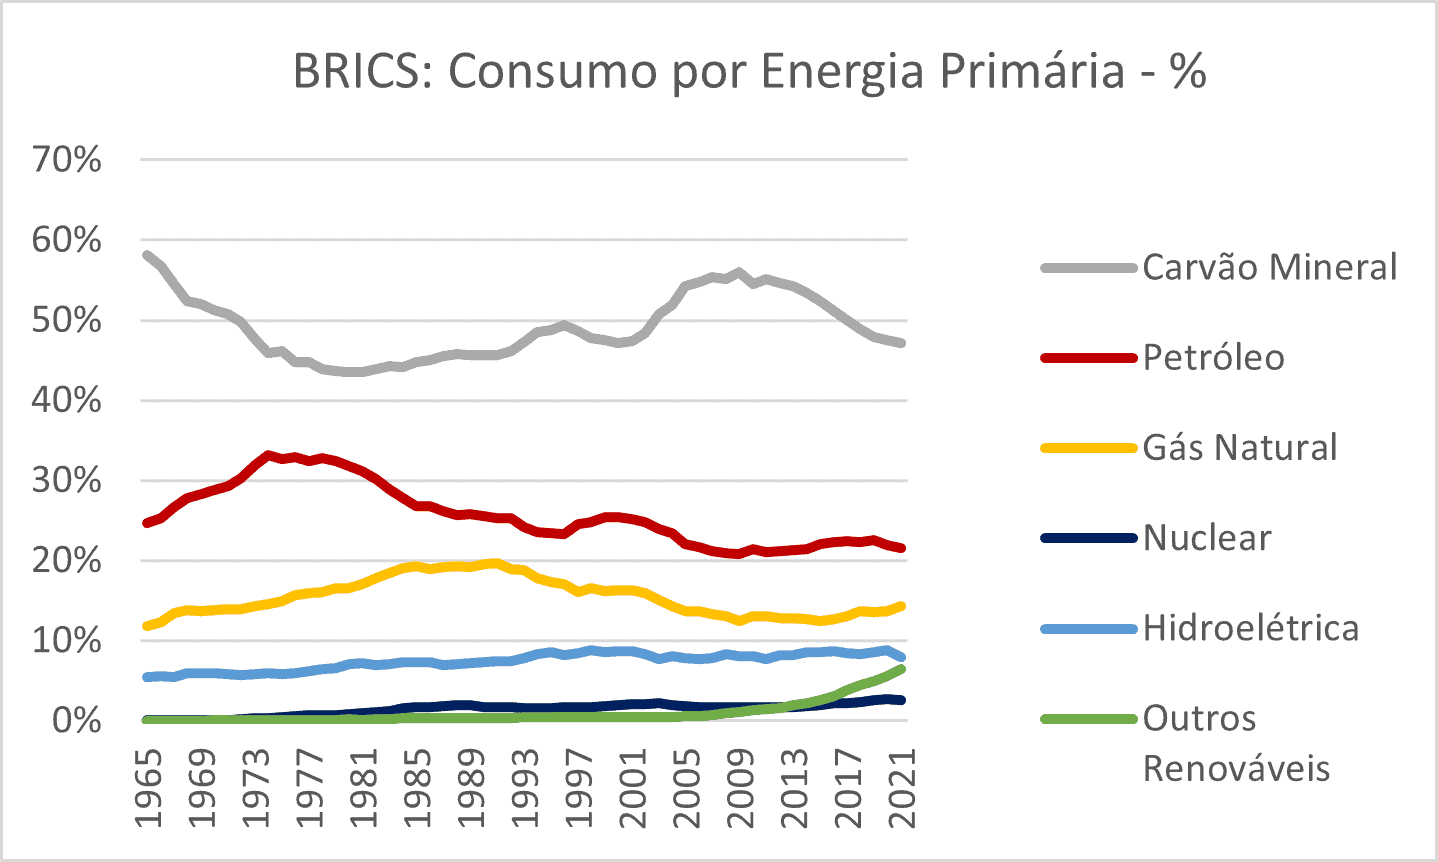 Figura sobre a evolução da participação das energias primárias no BRICS